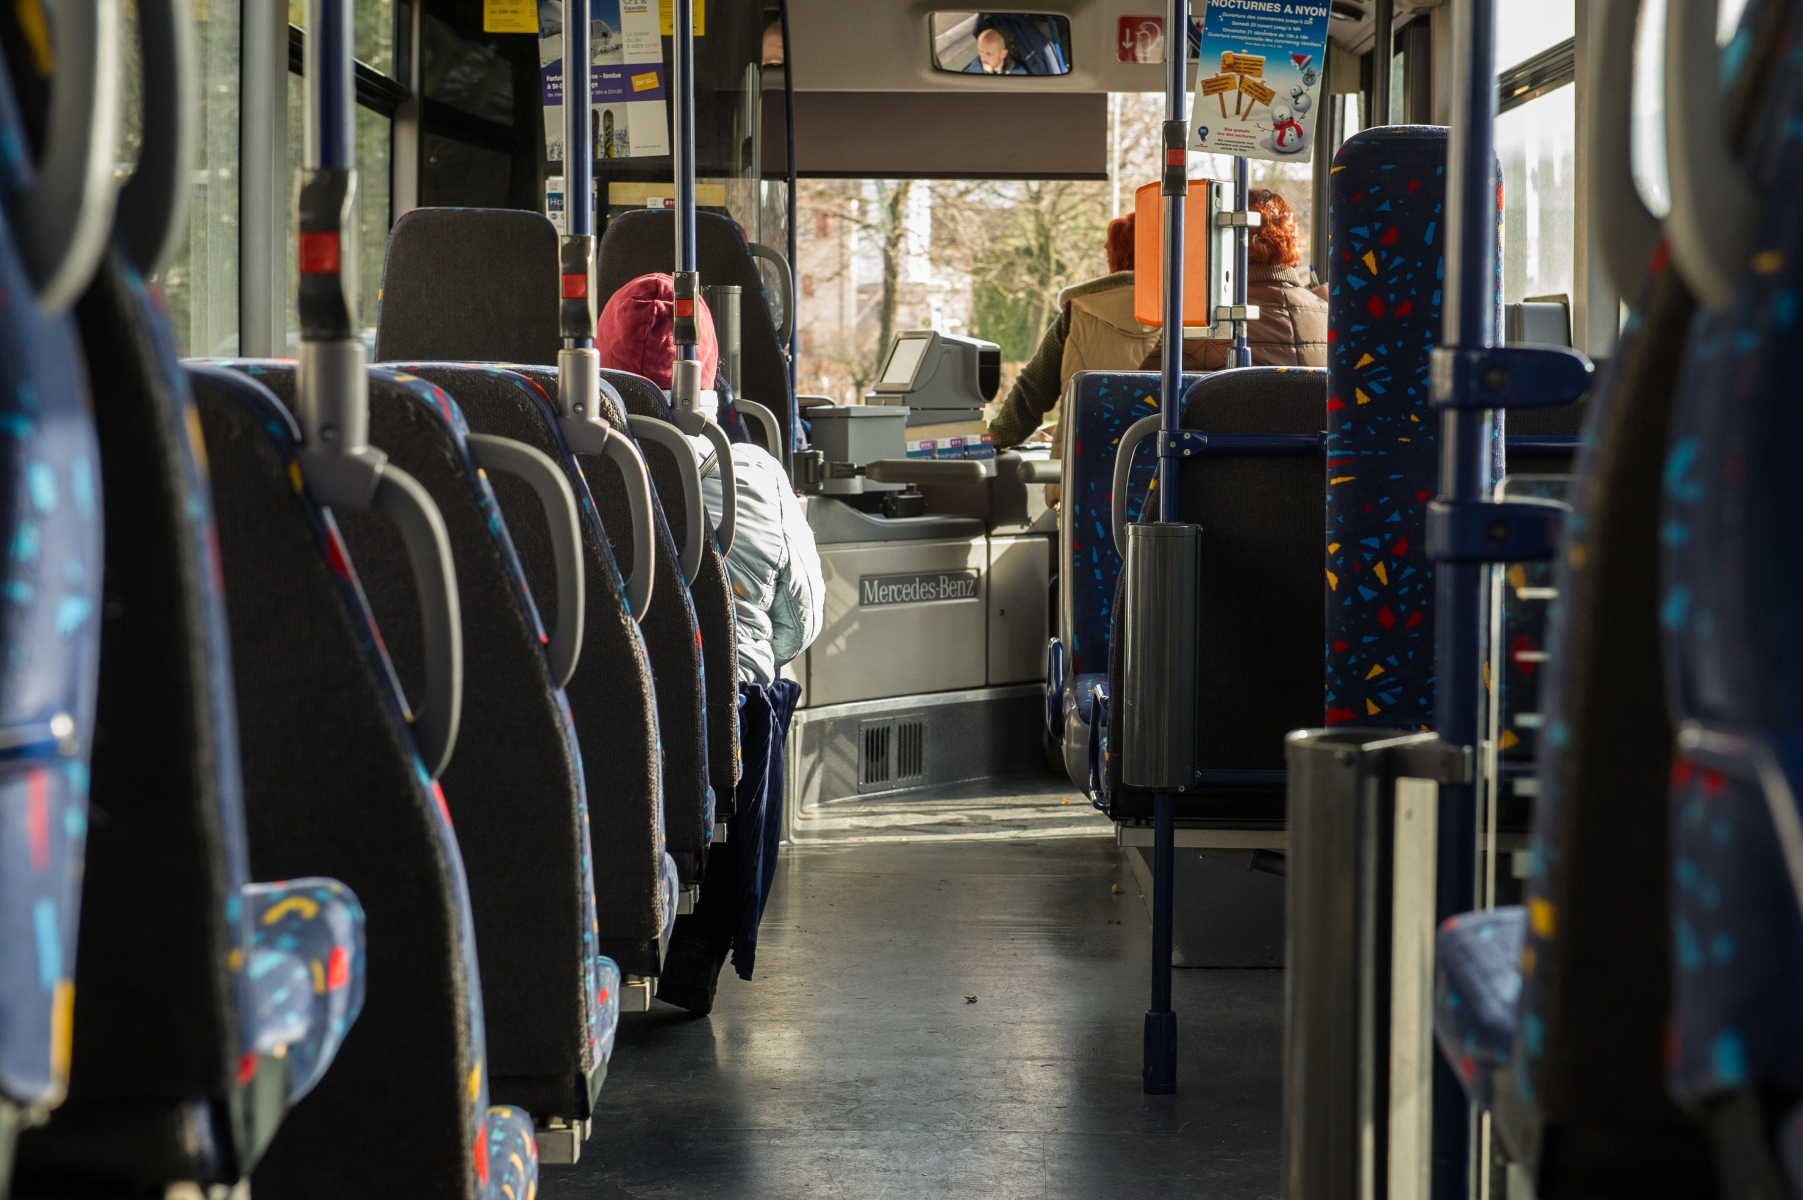 Les bus nyonnais sont de plus en plus fréquentés